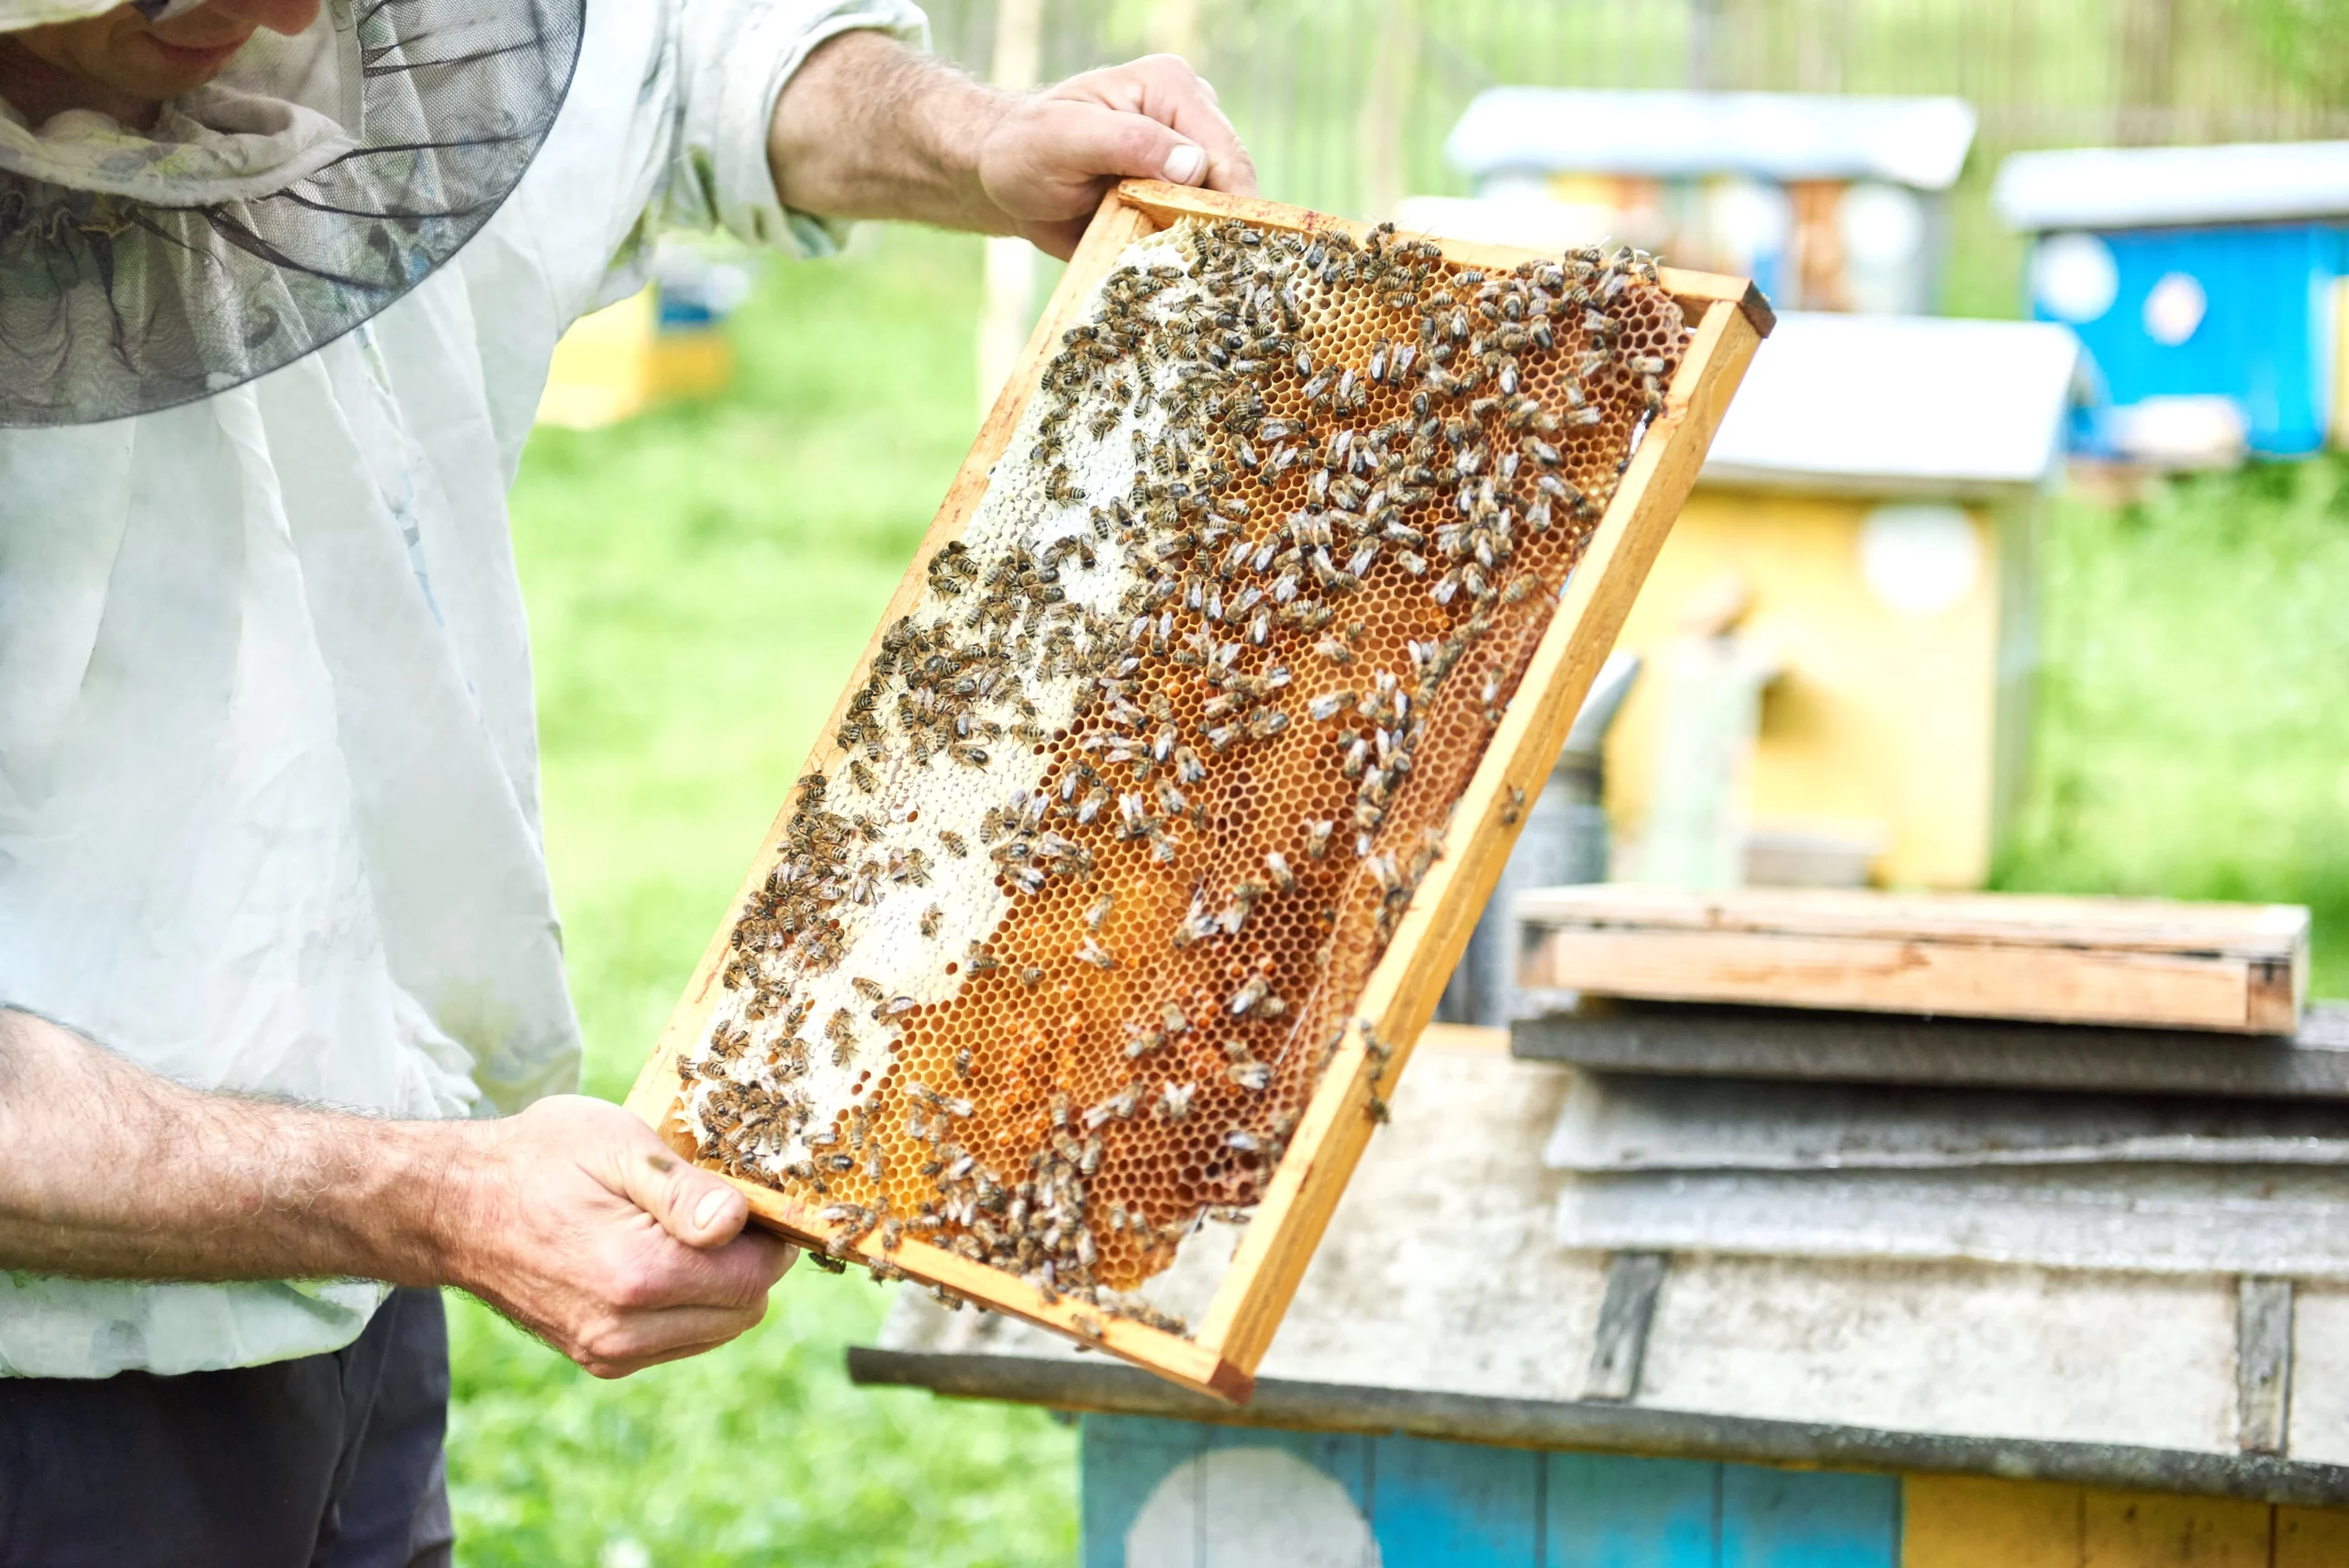 Жизненный цикл и развитие пчелиной матки